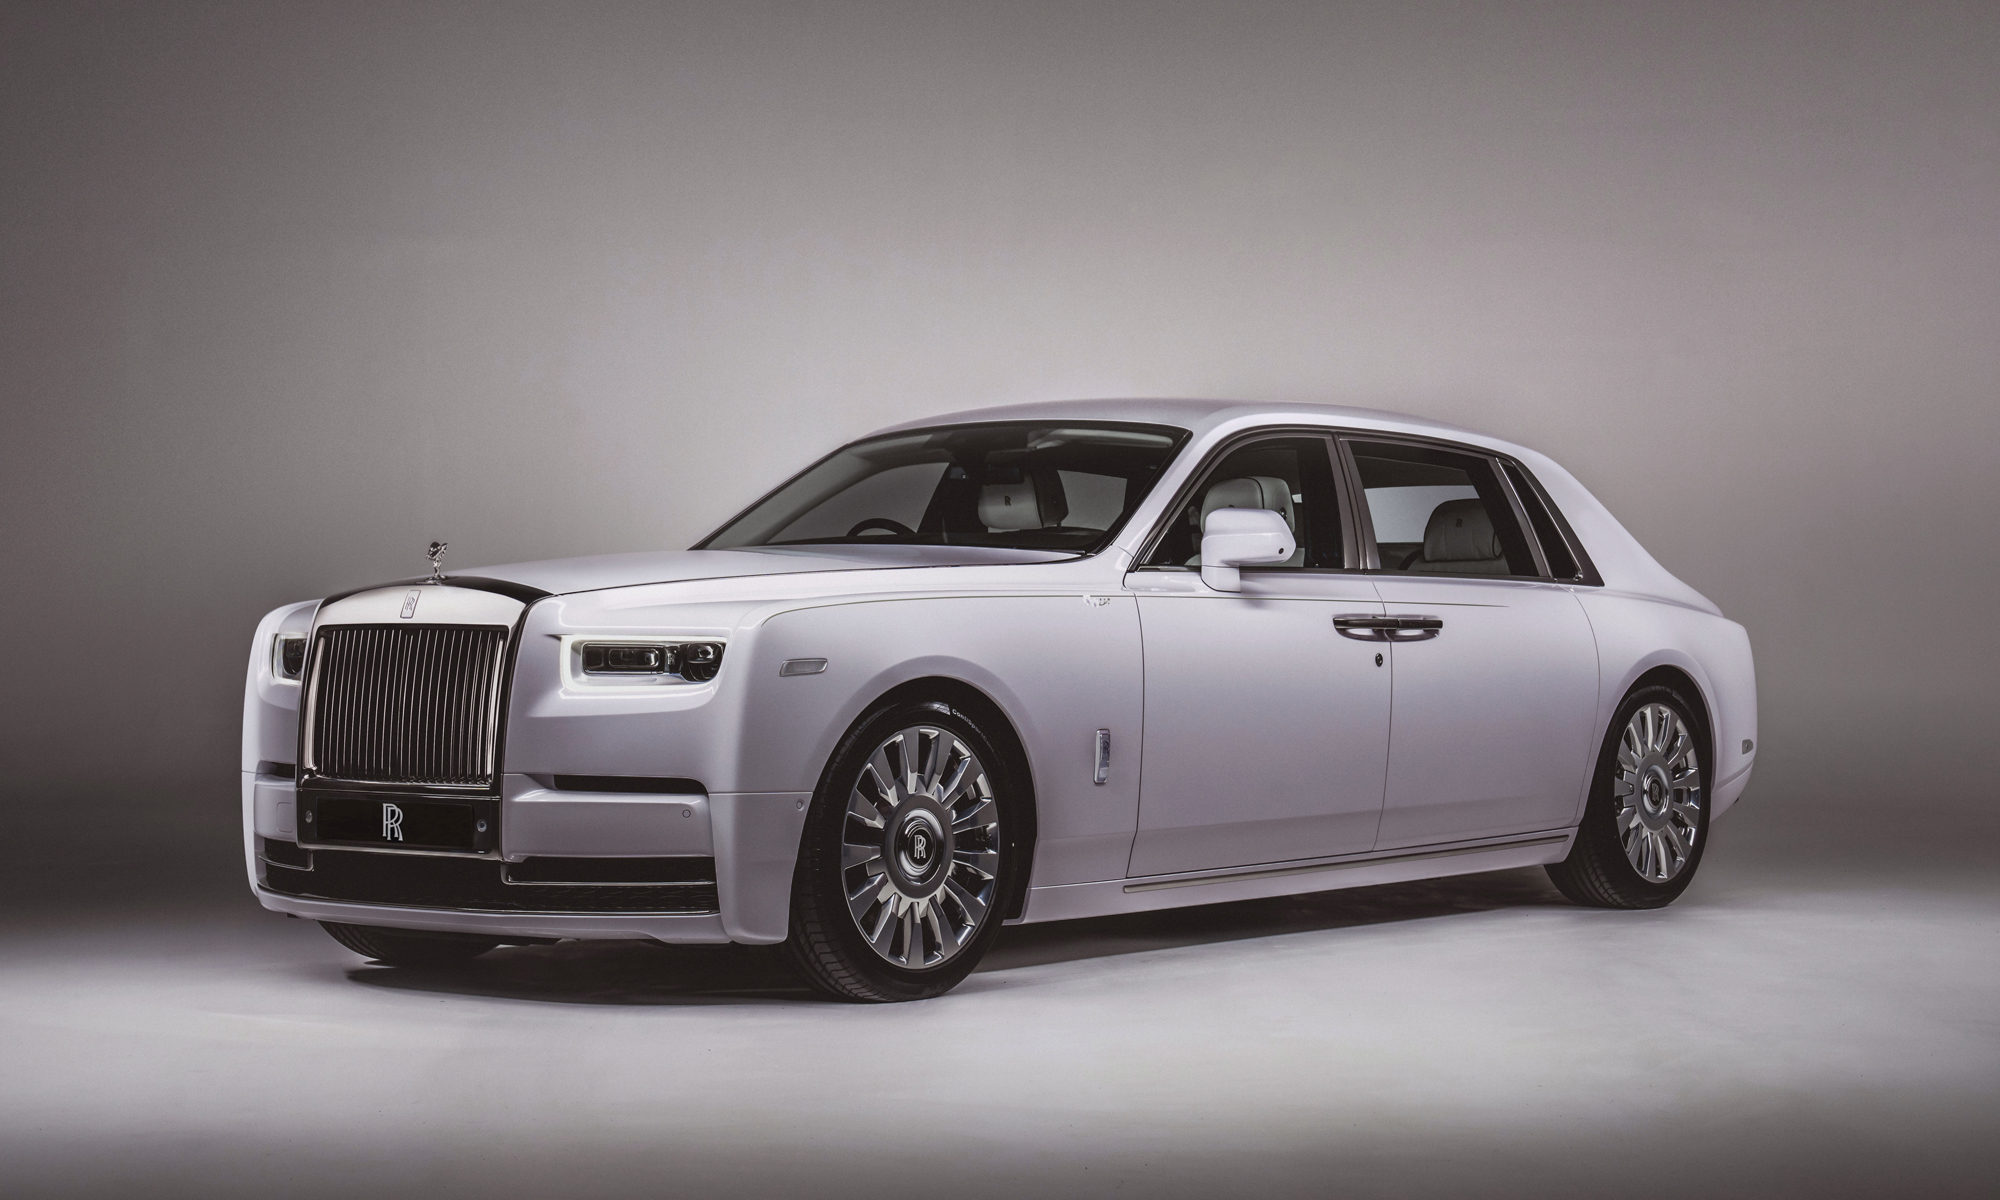 Xe hơi sang trọng - Rolls-Royce Phantom